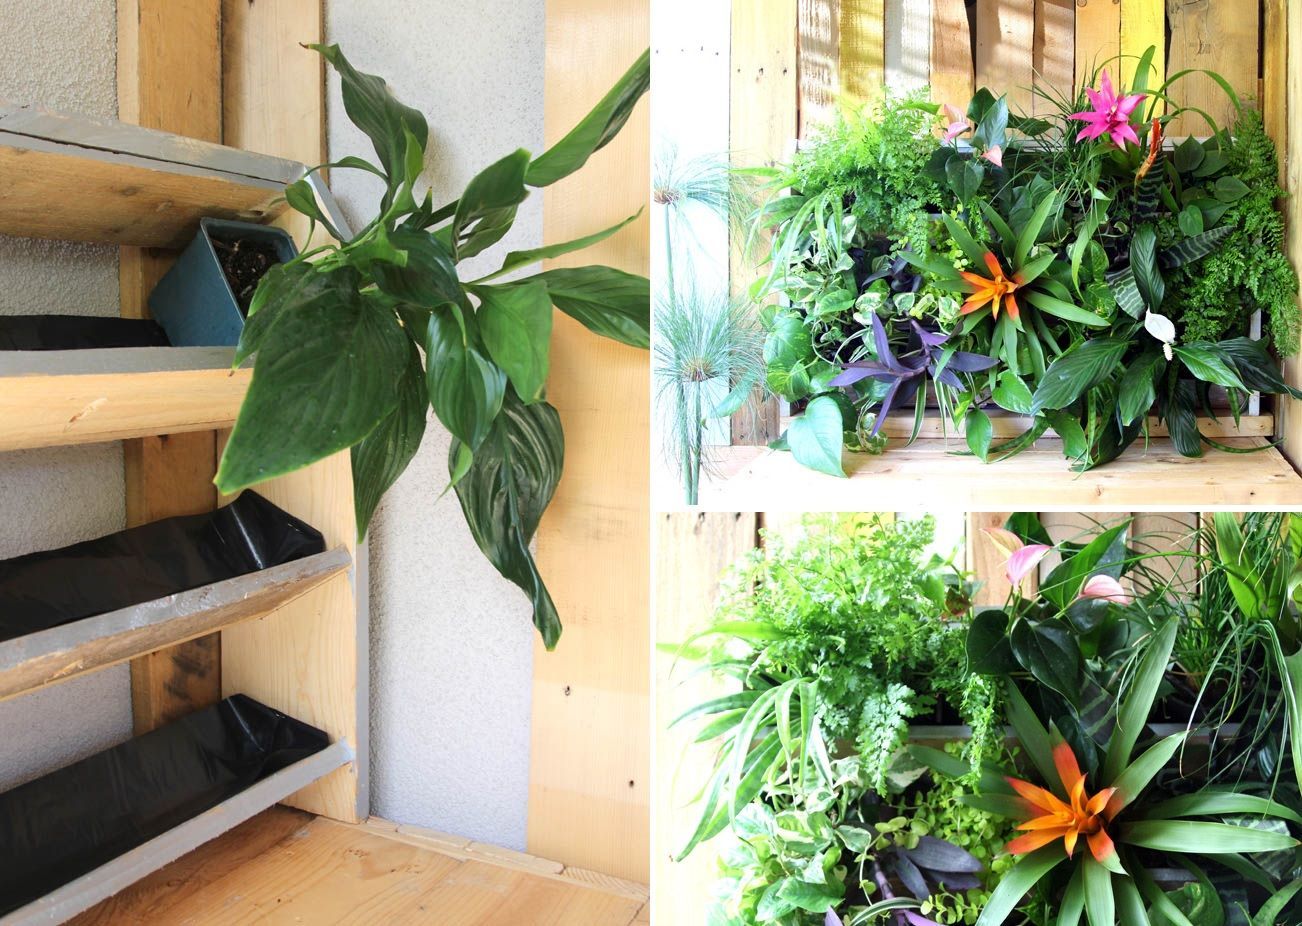 jardiniere palette a plusieurs etages a faire soi meme diy projet deco exterieure plantes decoratives